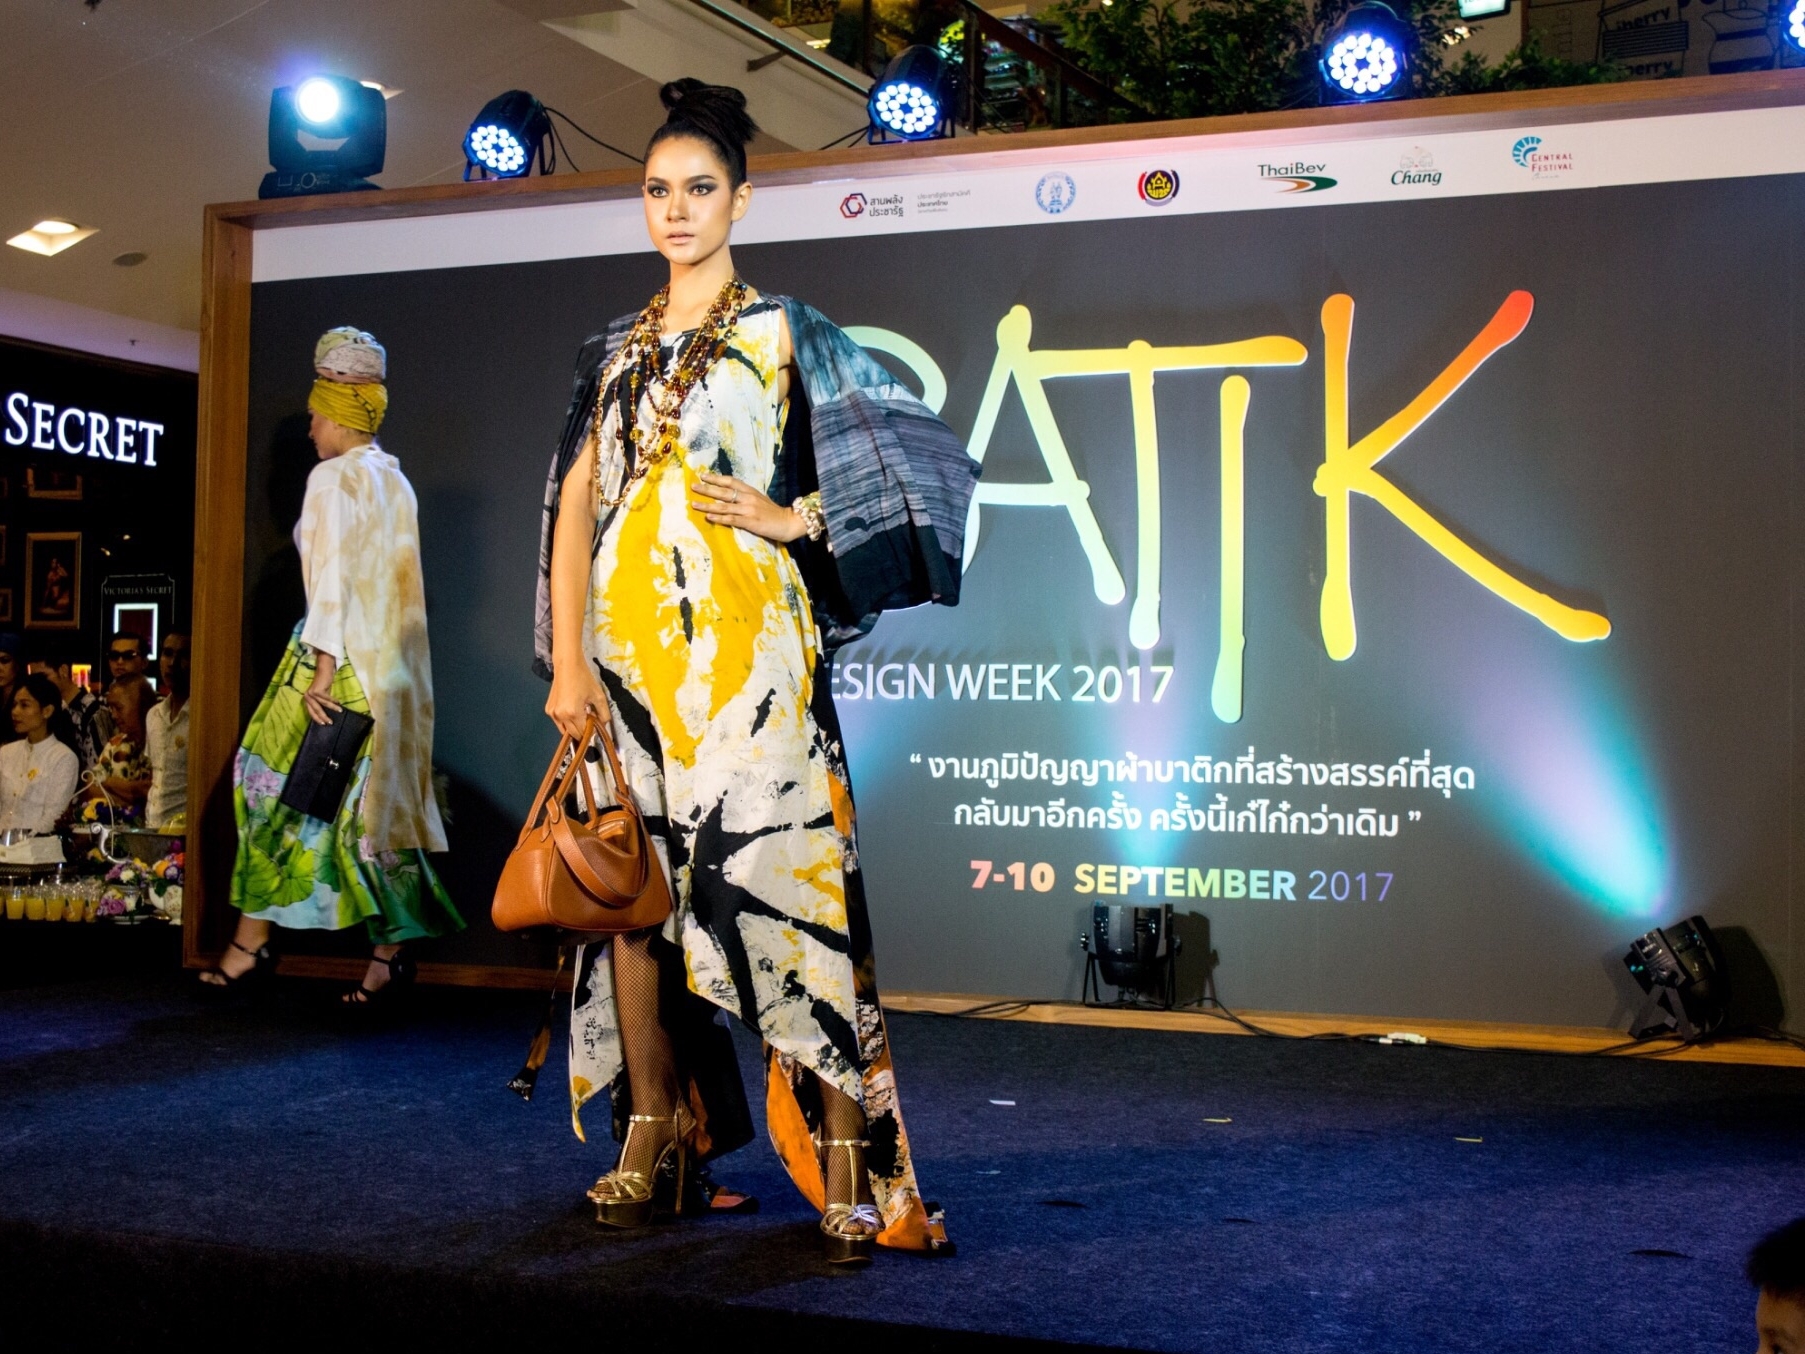  Batik Design Week 2017